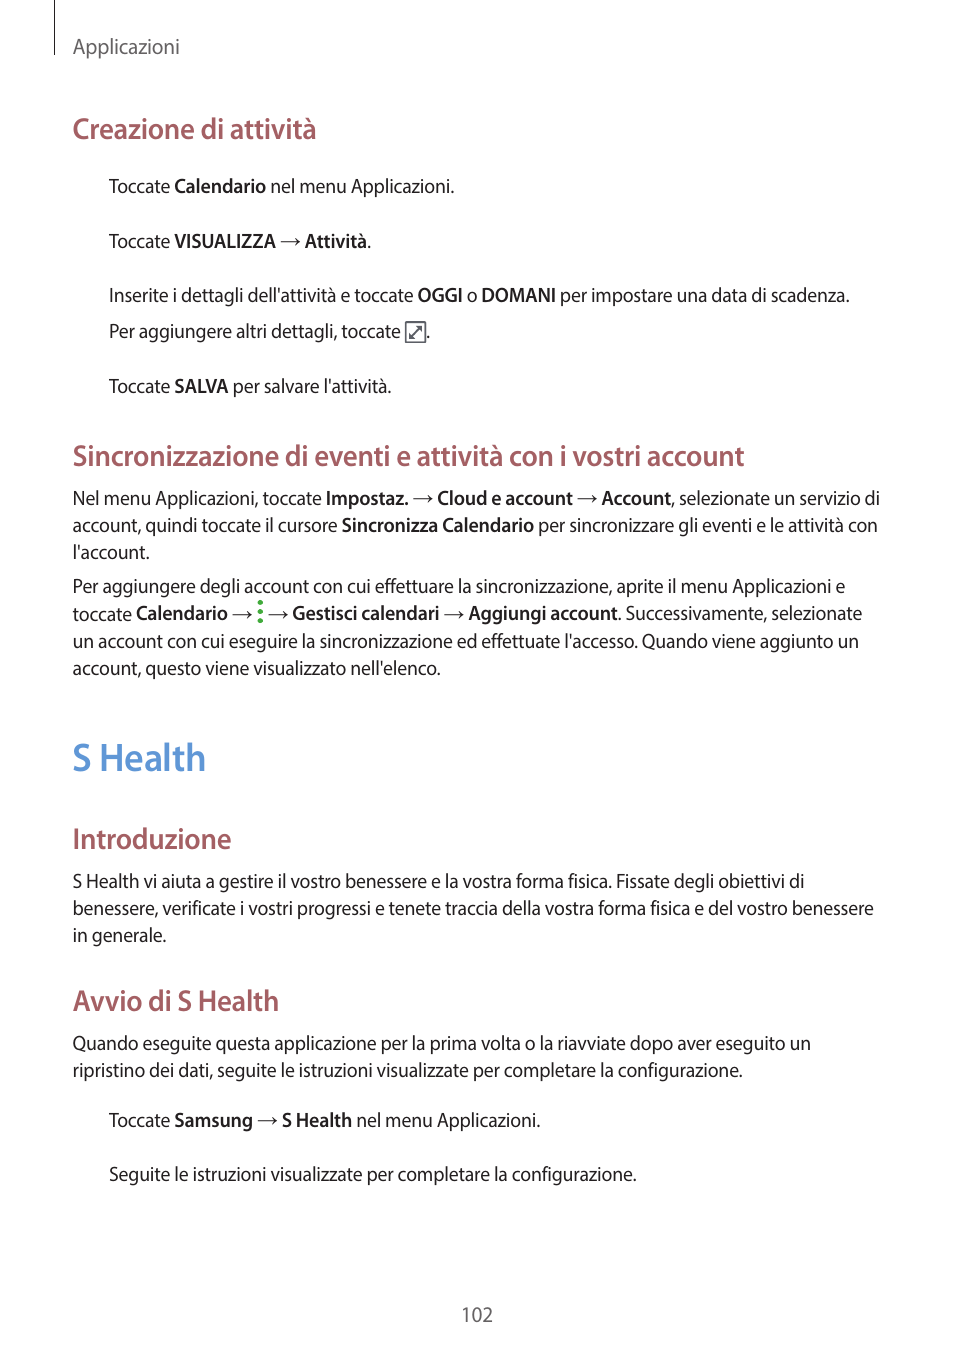 102 s health, S health, Creazione di attività | Introduzione, Avvio di s health | Samsung Galaxy A3 SM-A320FL Manuale d'uso | Pagina 102 / 150